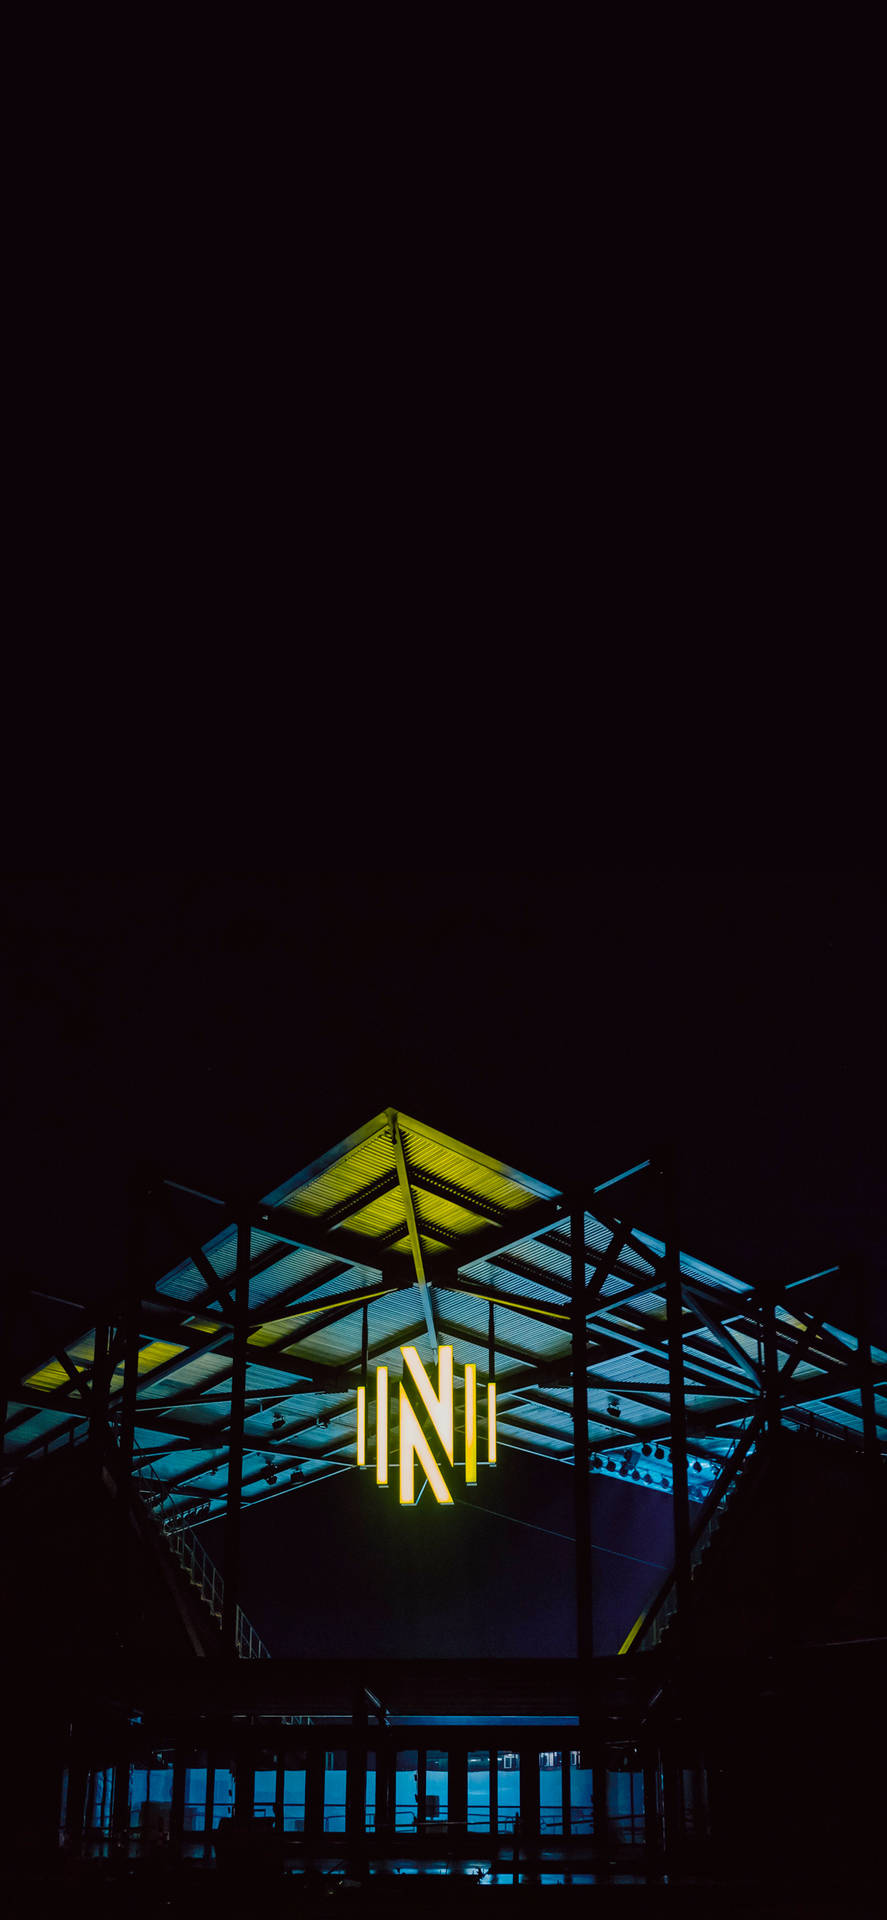 Nashville SC Stadium At Night Wallpaper